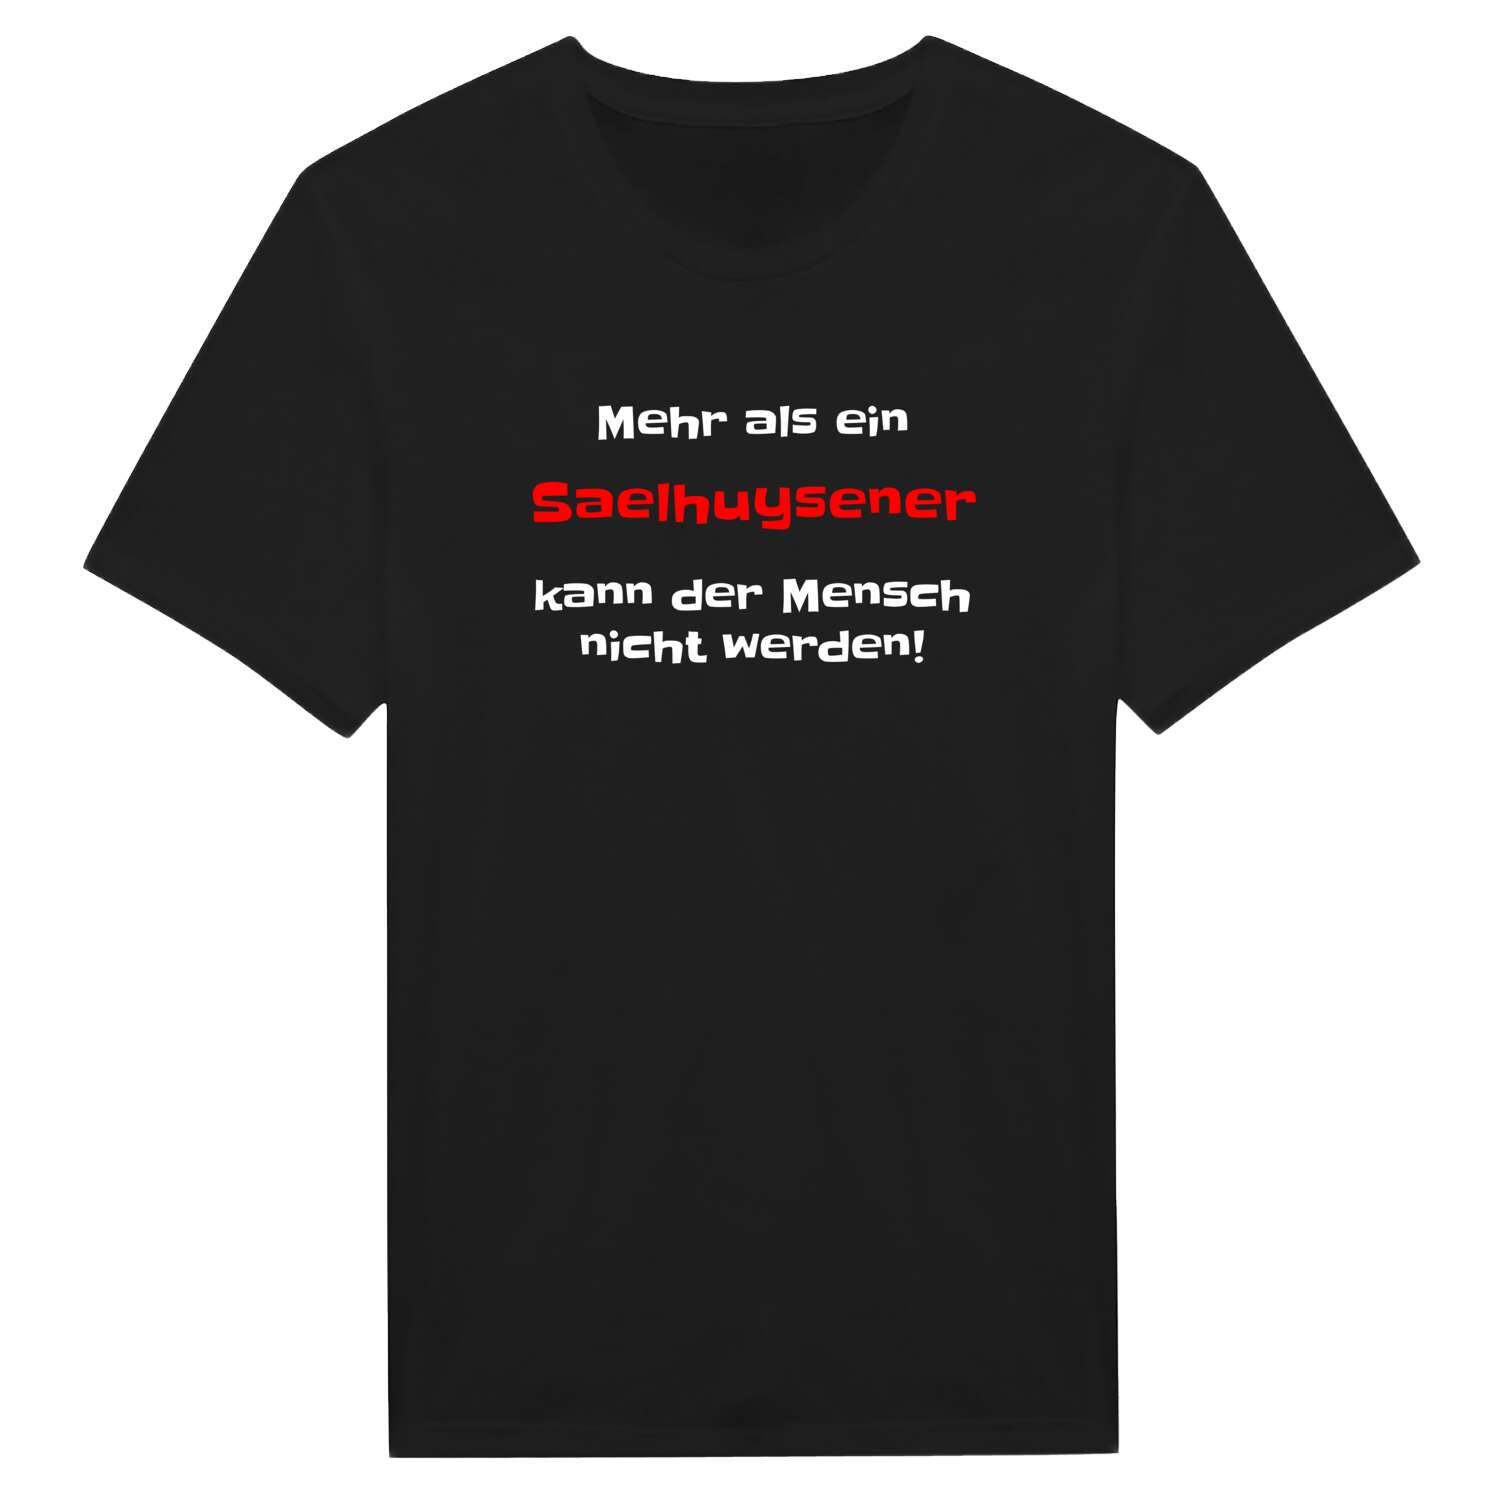 Saelhuysen T-Shirt »Mehr als ein«